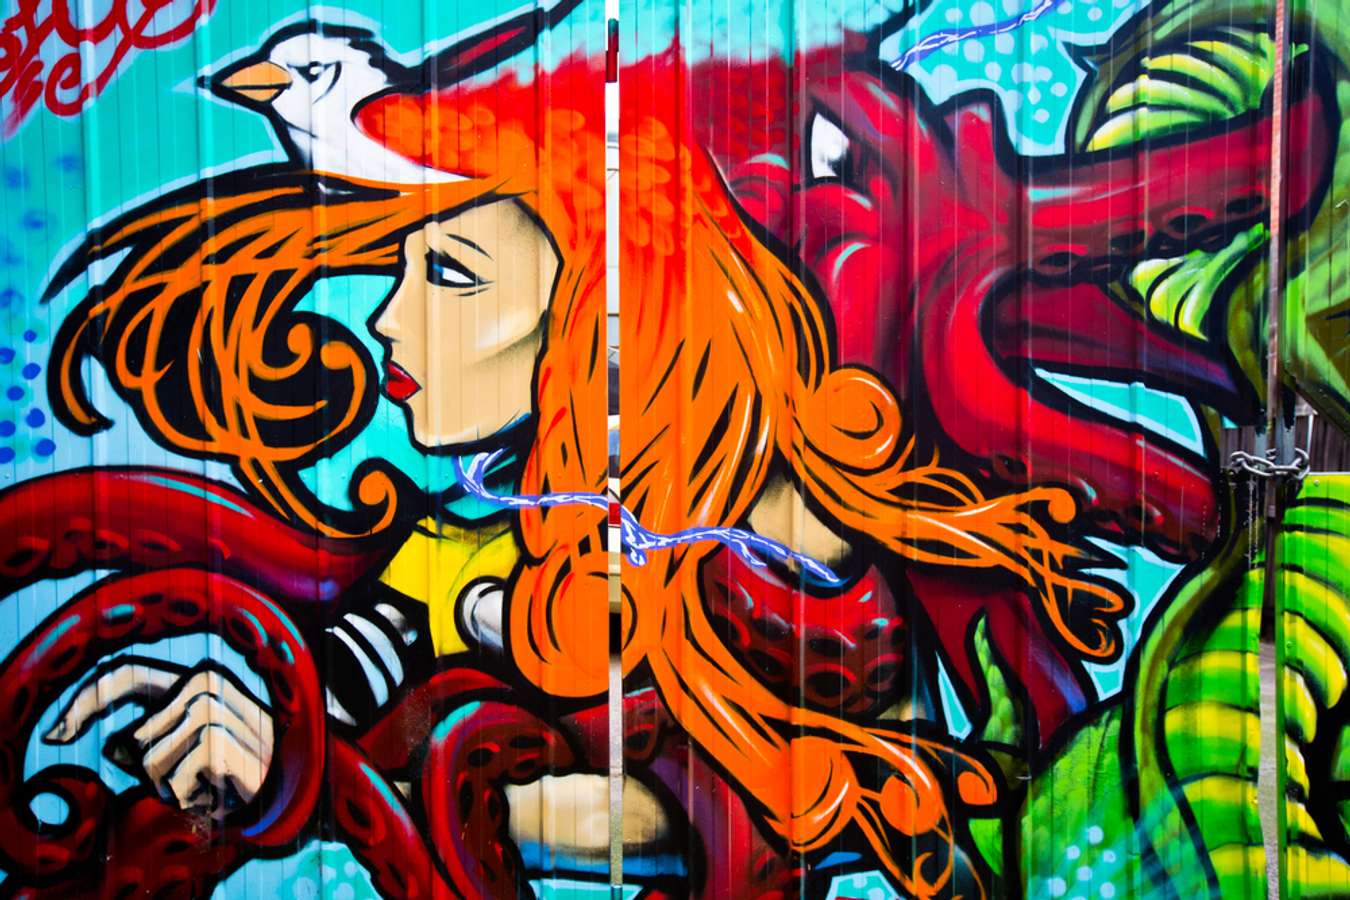 Melbourne Street Art - Sydney or Melbourne